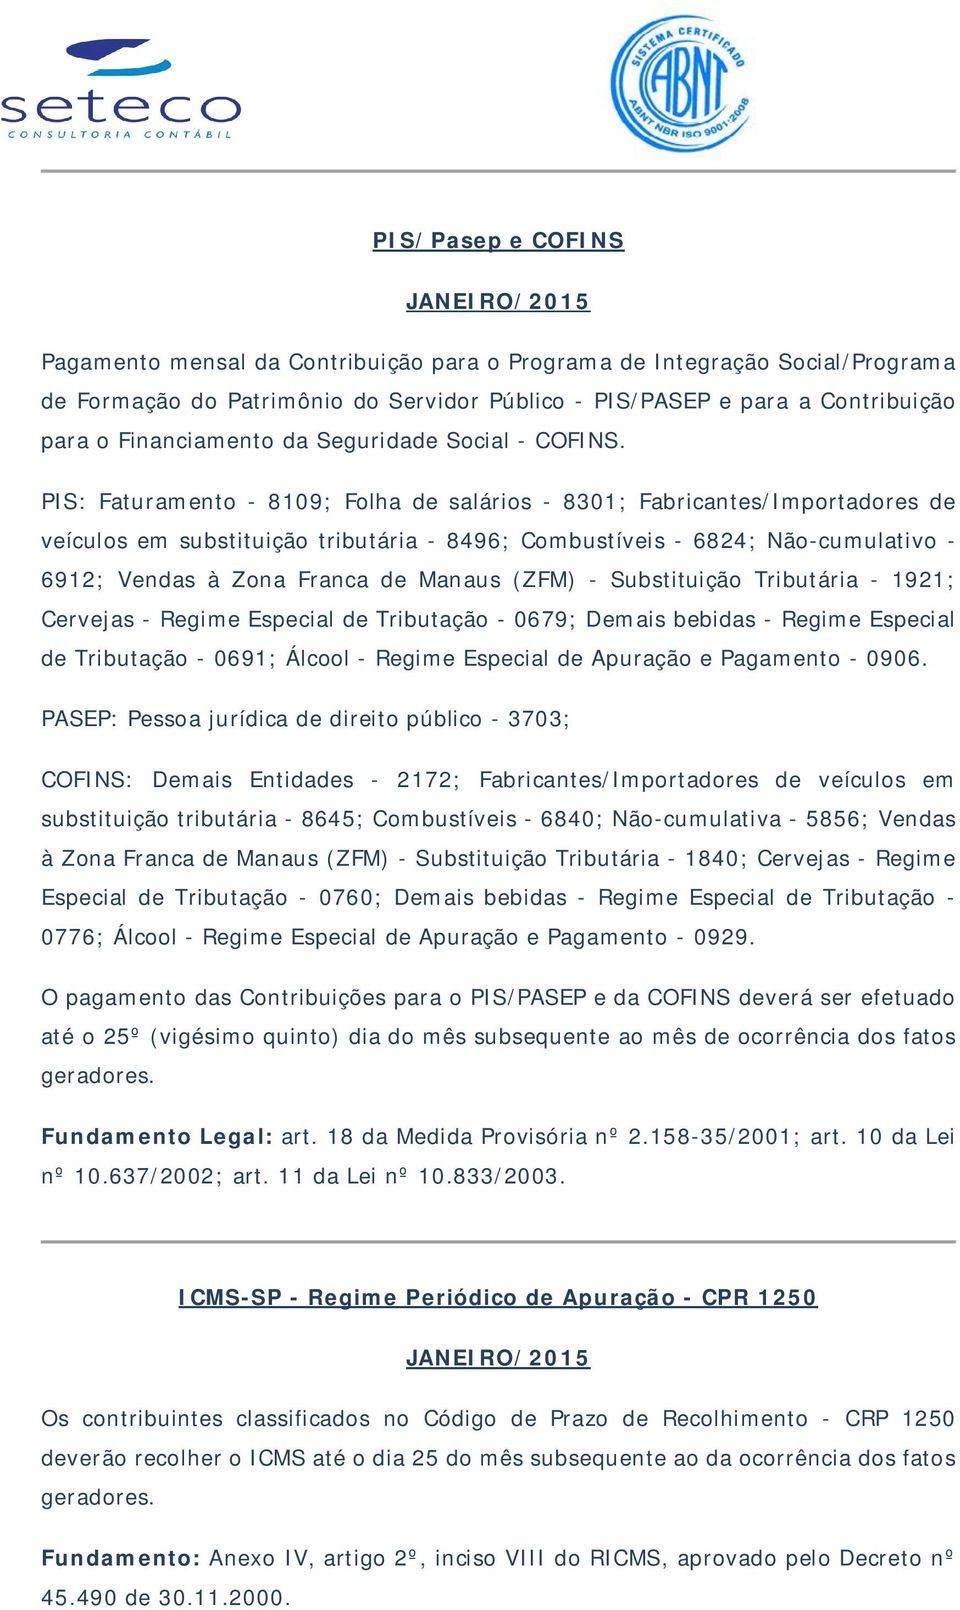 PIS: Faturamento - 8109; Folha de salários - 8301; Fabricantes/Importadores de veículos em substituição tributária - 8496; Combustíveis - 6824; Não-cumulativo - 6912; Vendas à Zona Franca de Manaus